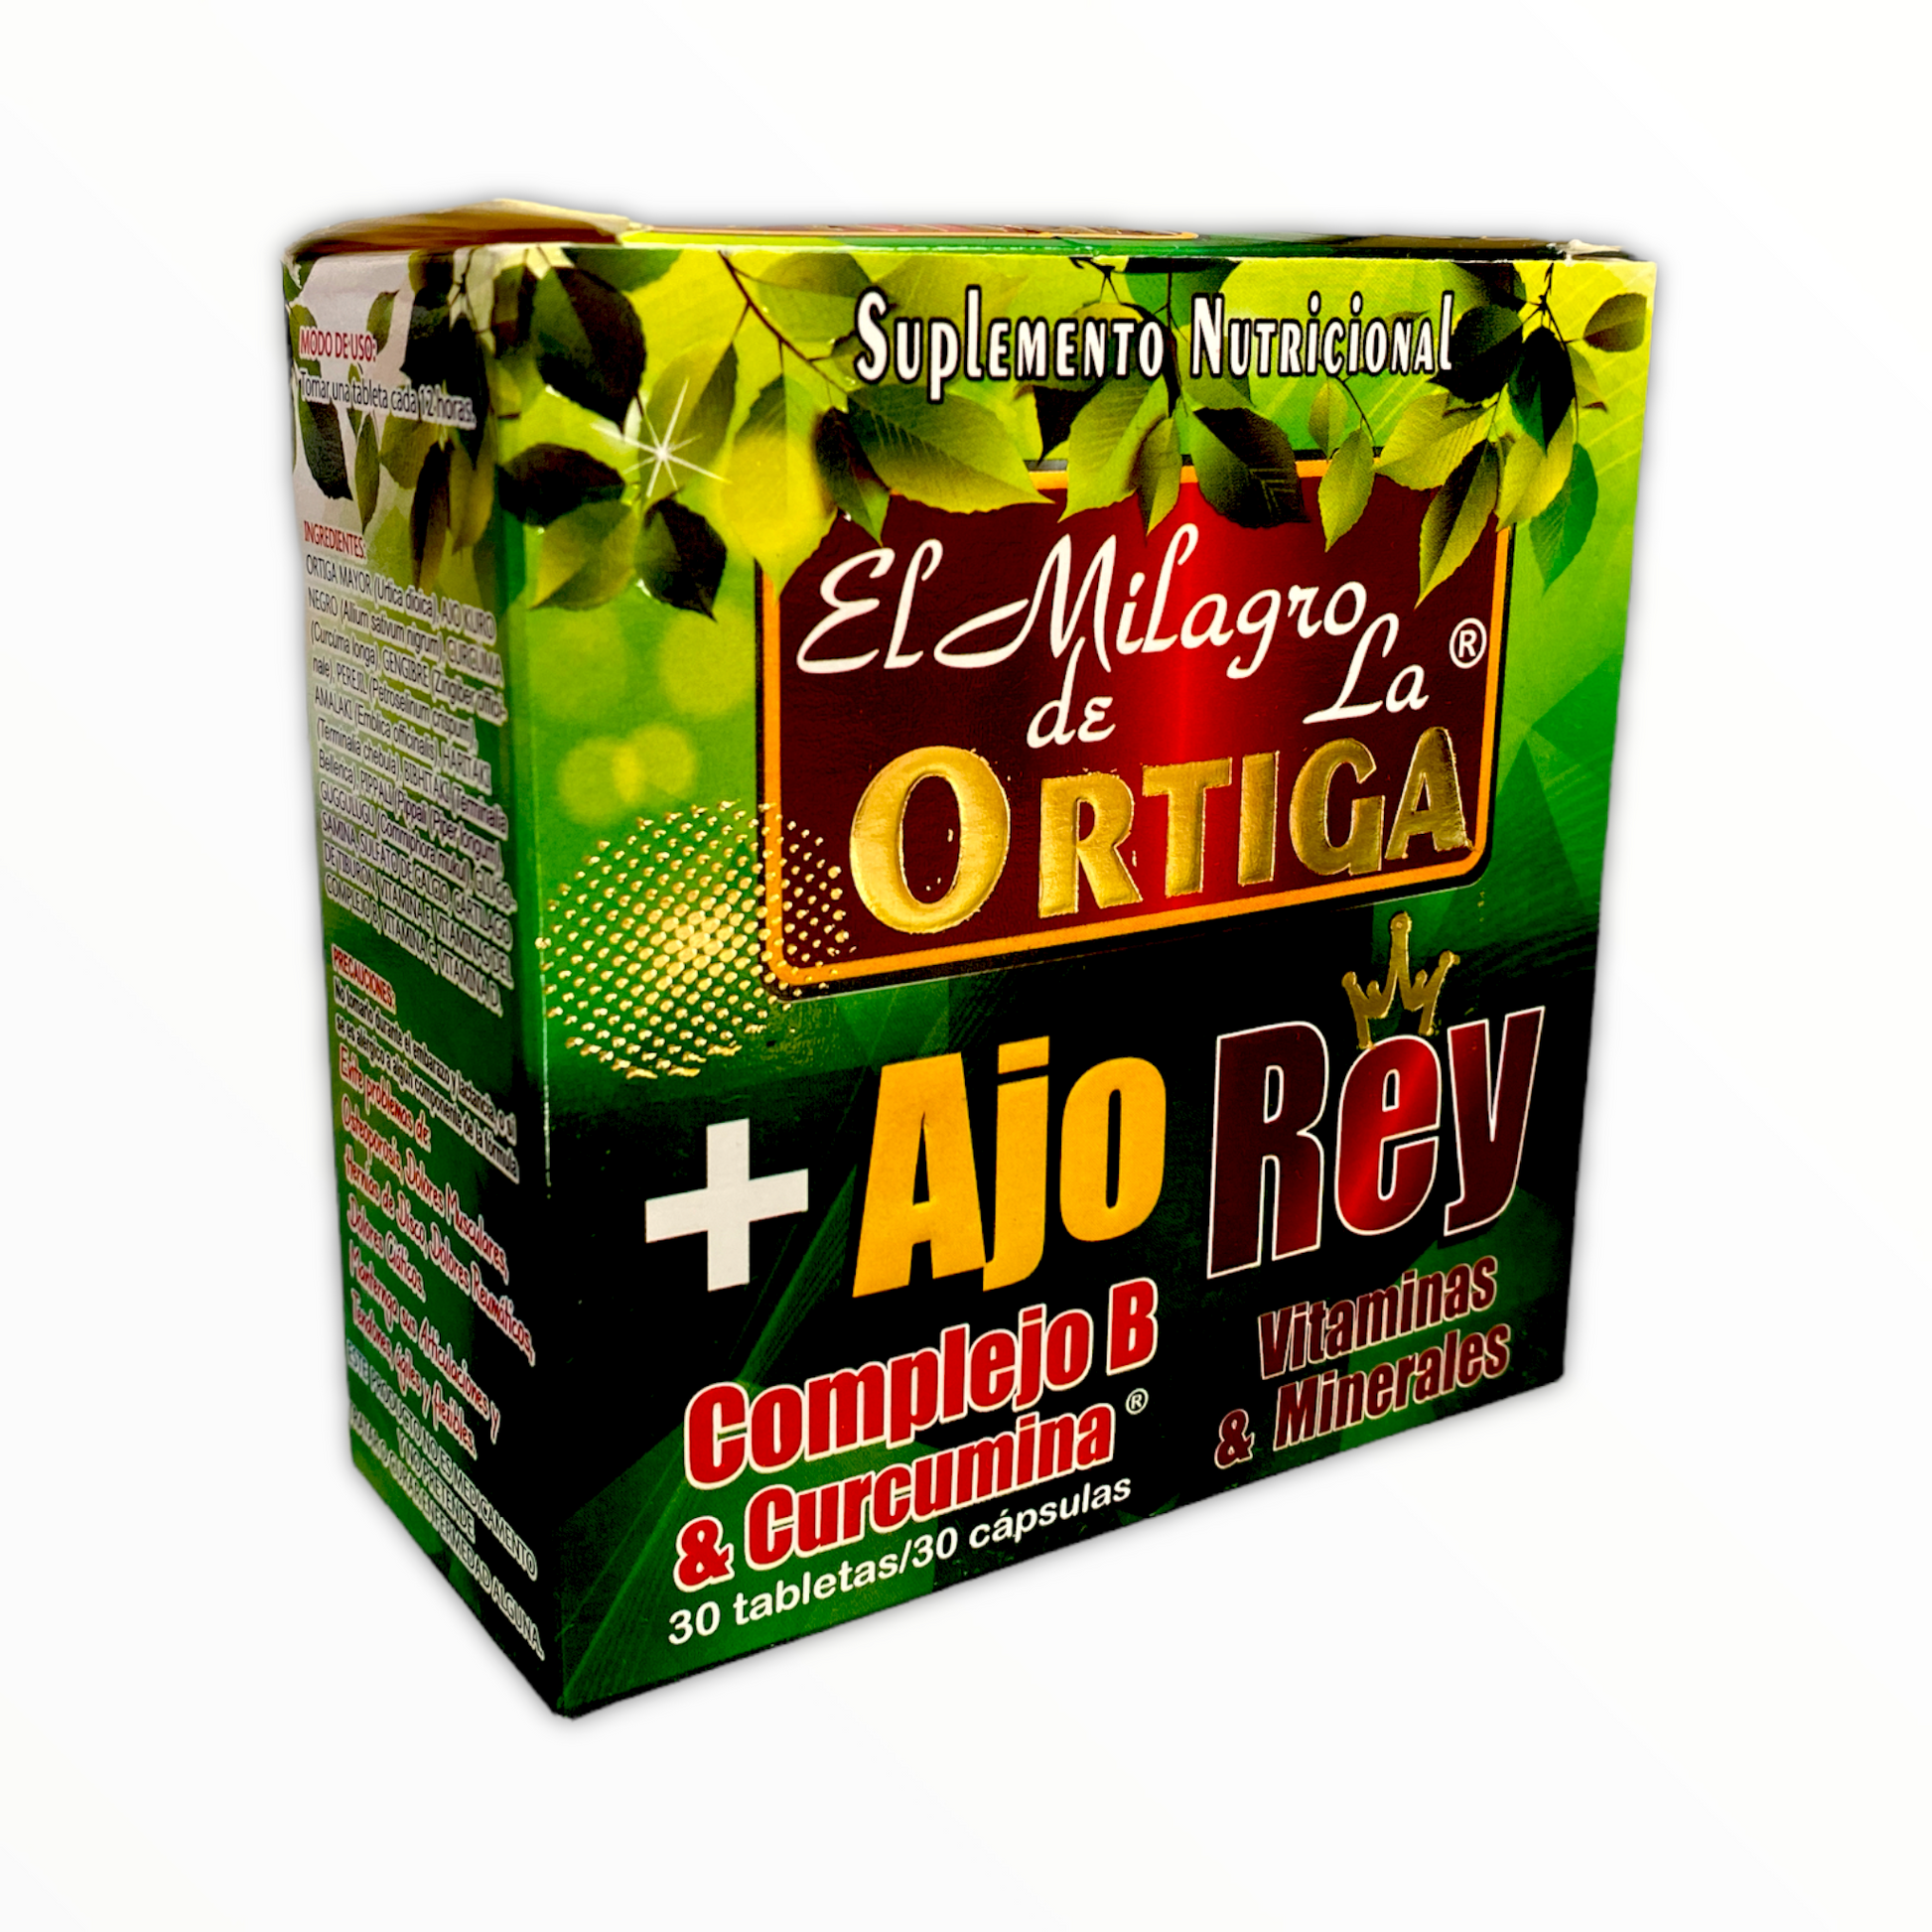 El Milagro de la Ortiga + Ajo Rey 60 tabletas